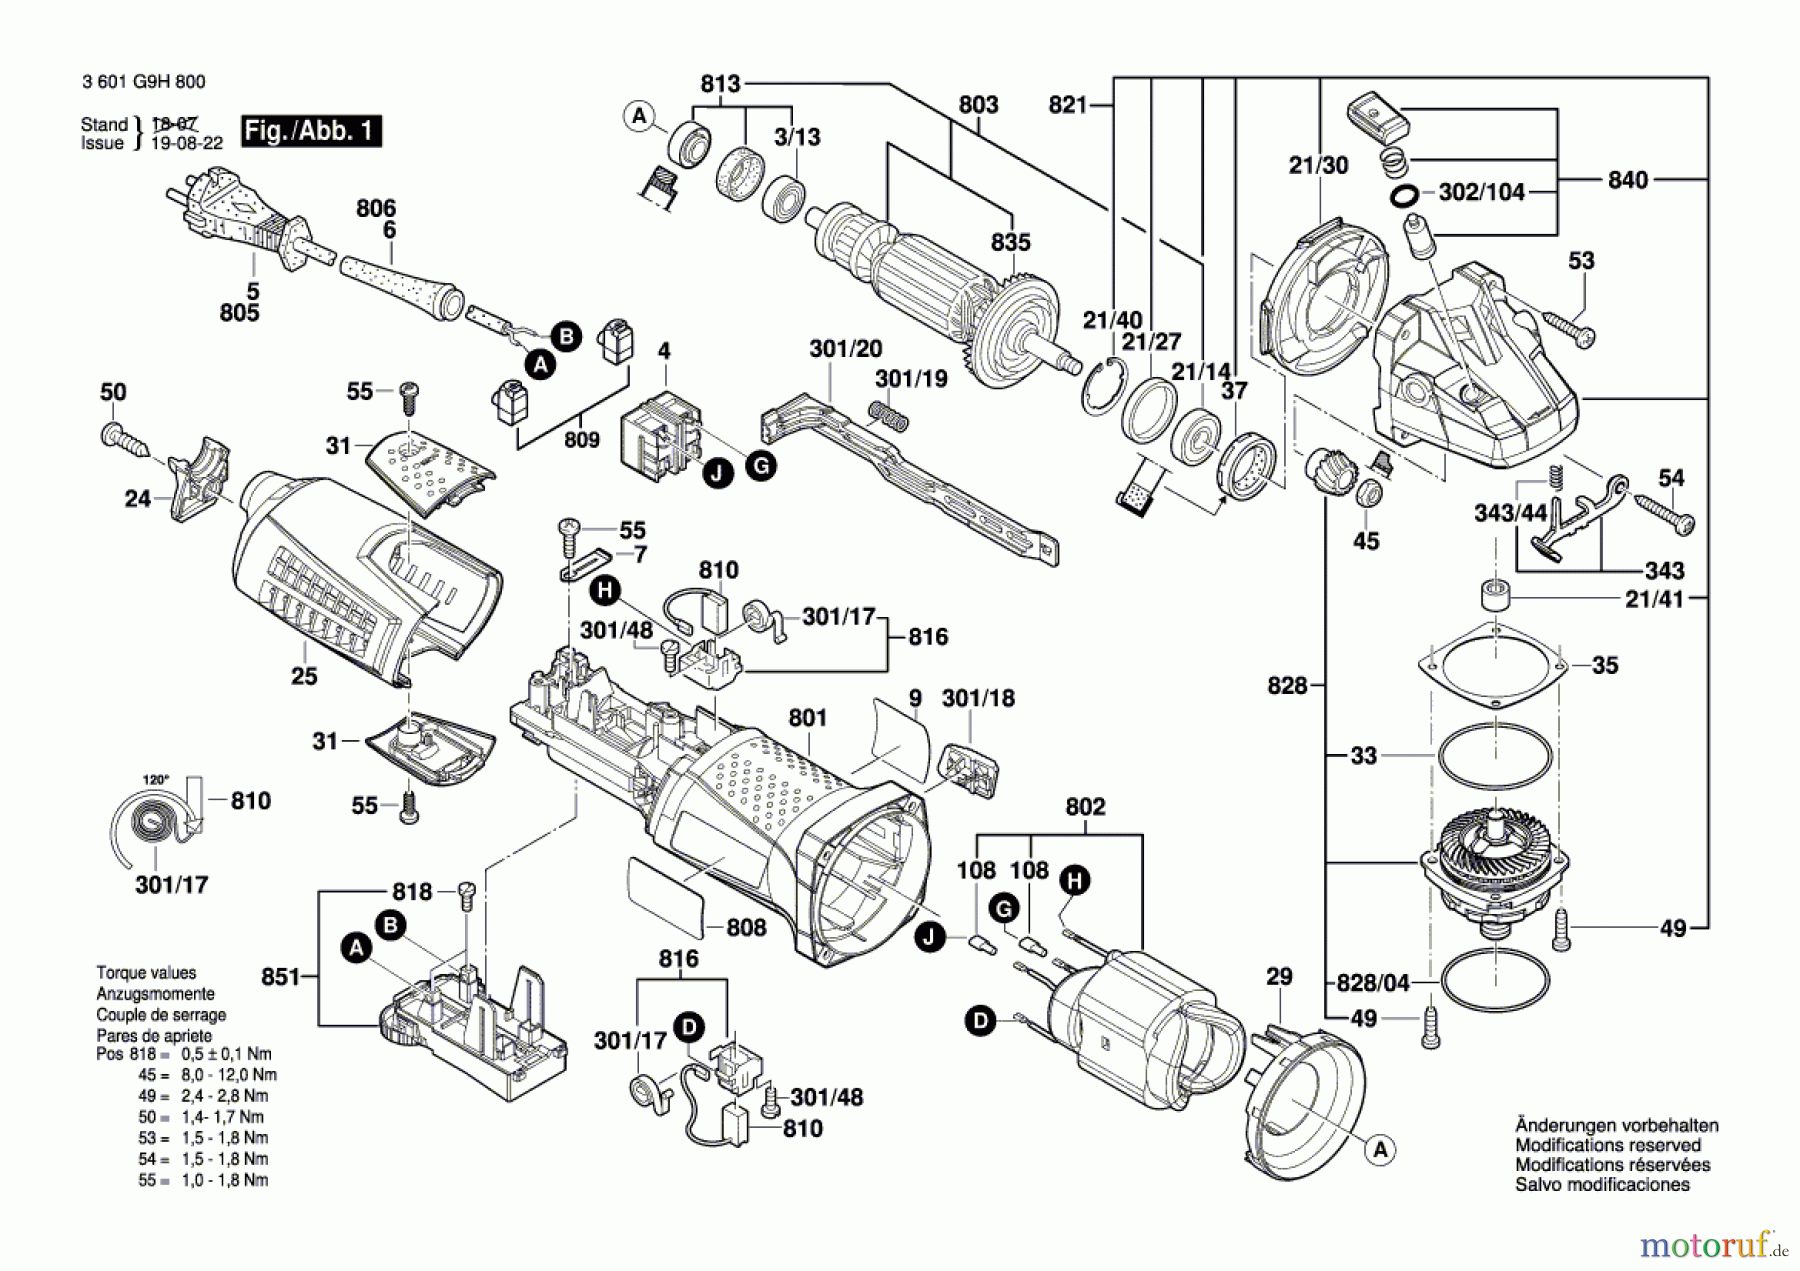  Bosch Werkzeug Winkelschleifer BAG 125-2 E Seite 1